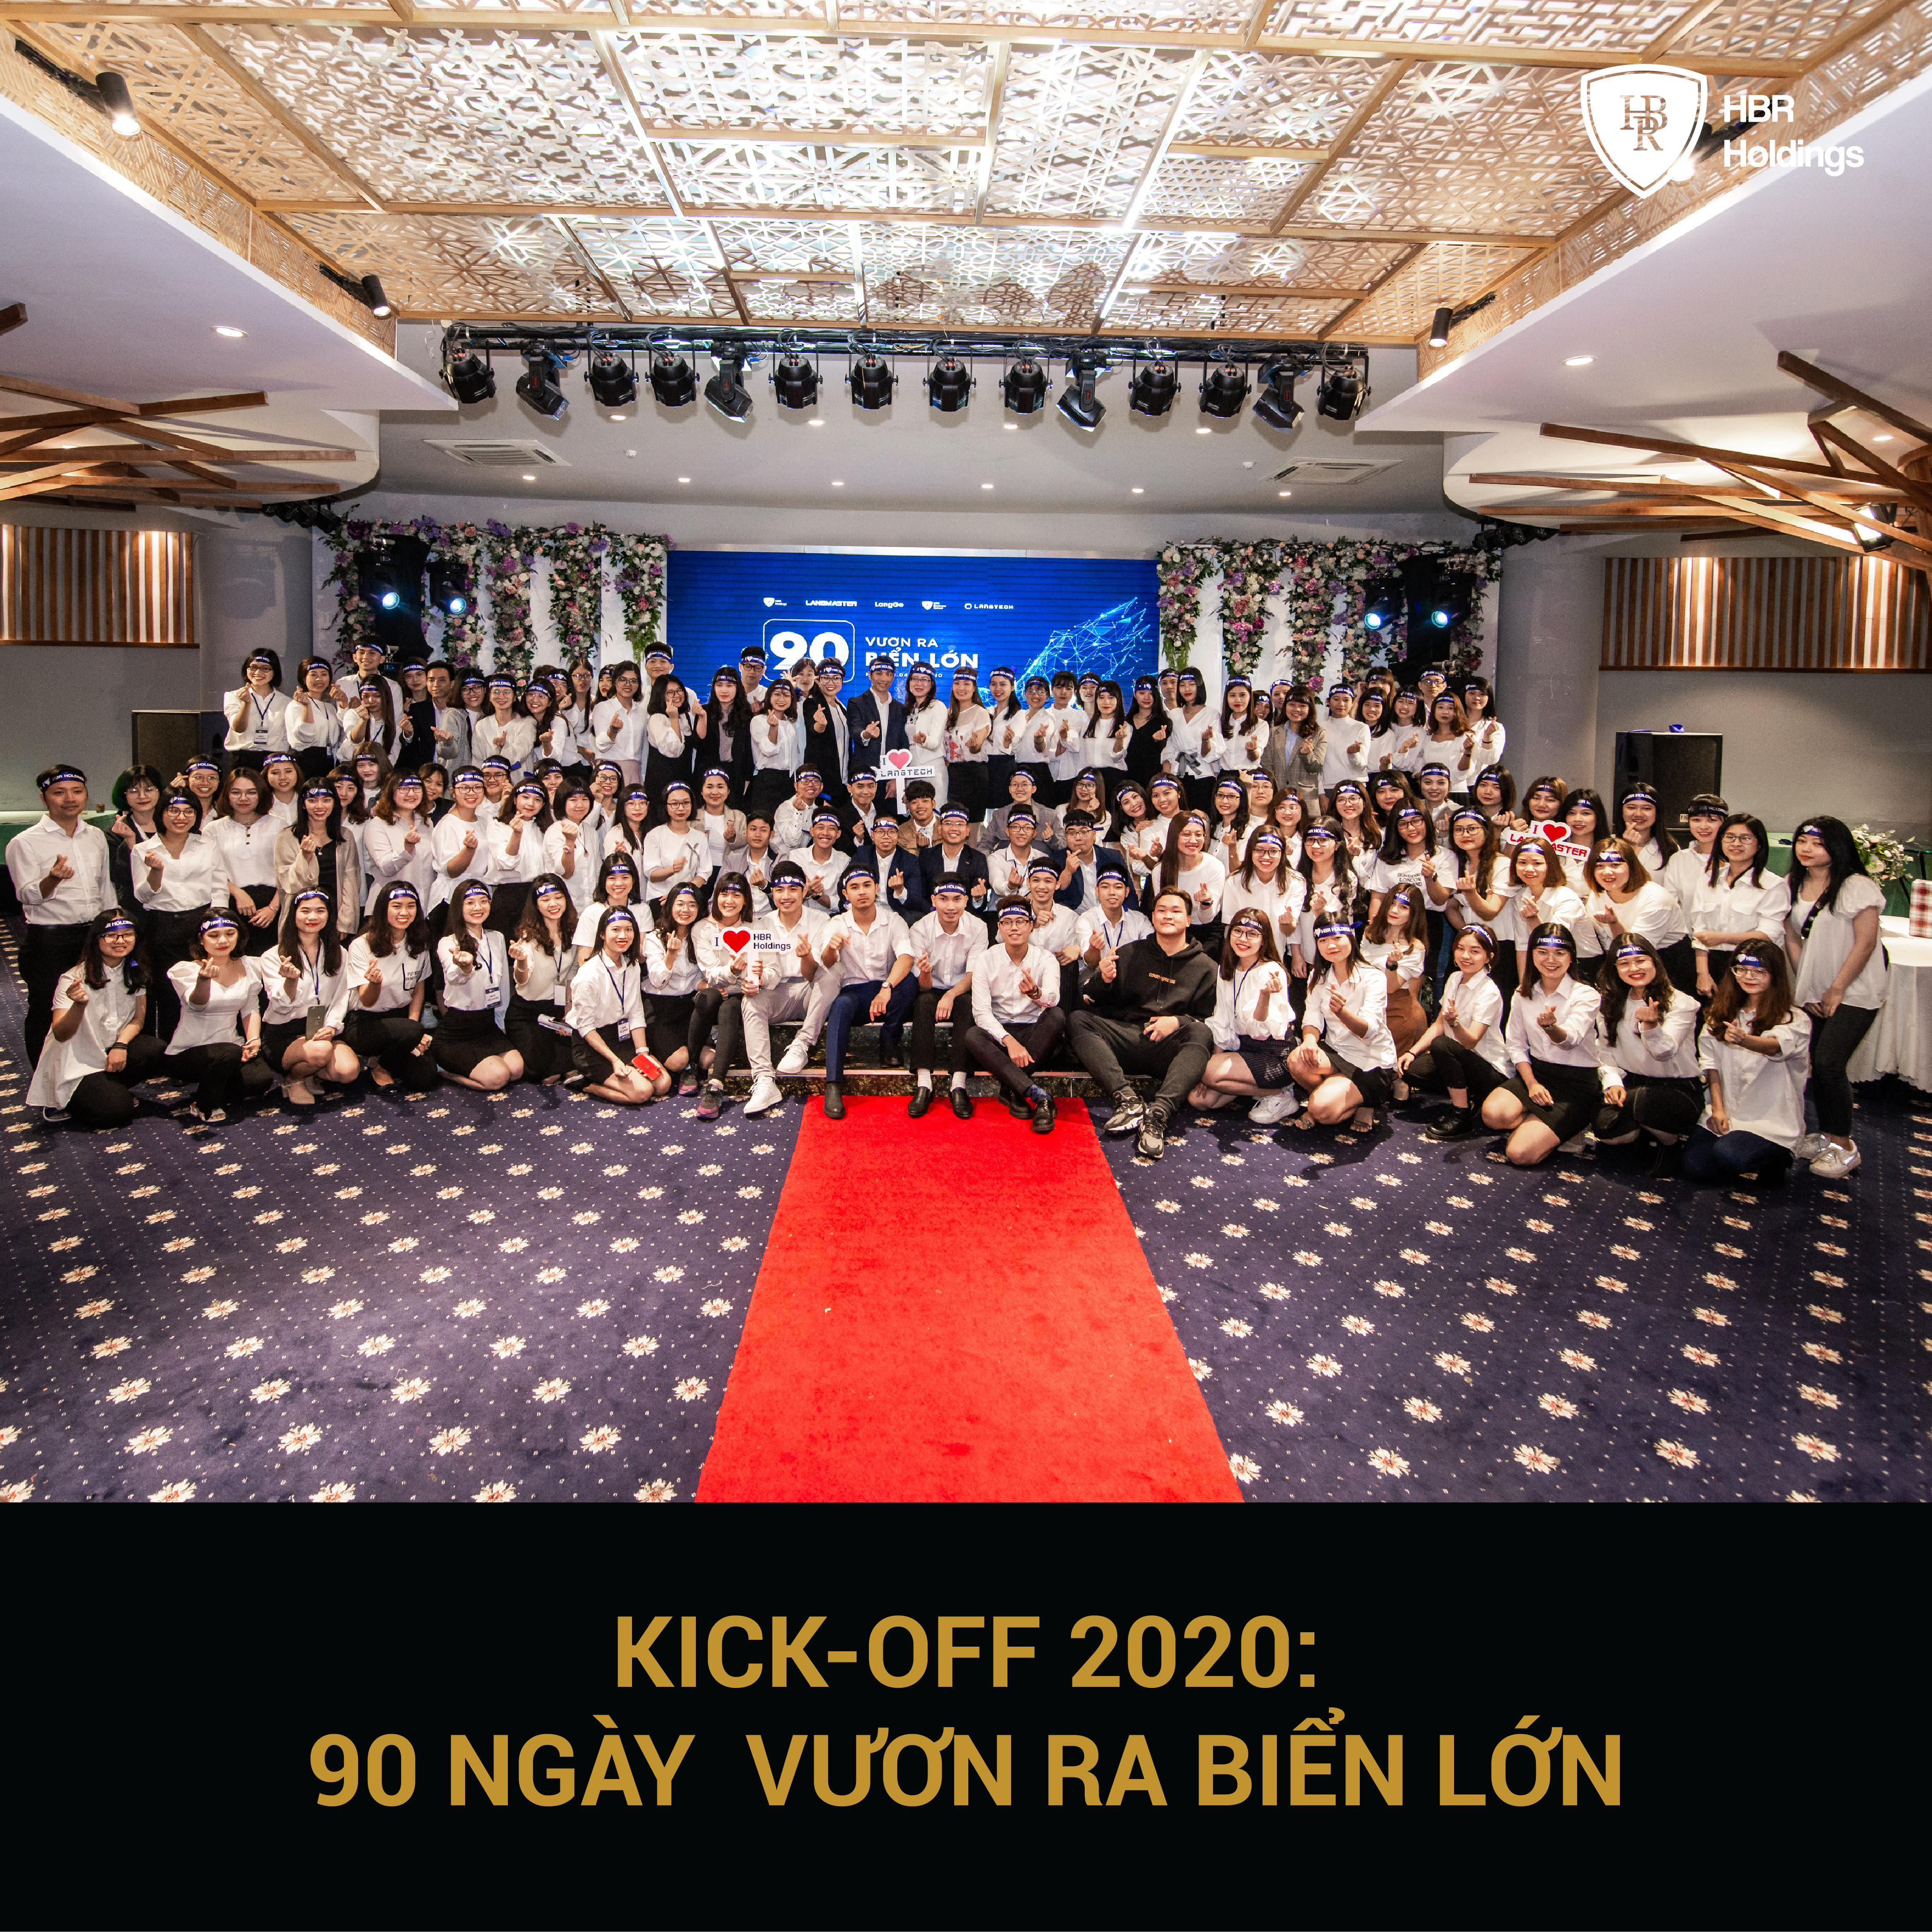 Buổi lễ Kick-Off 2020: 90 ngày vươn ra biển lớn